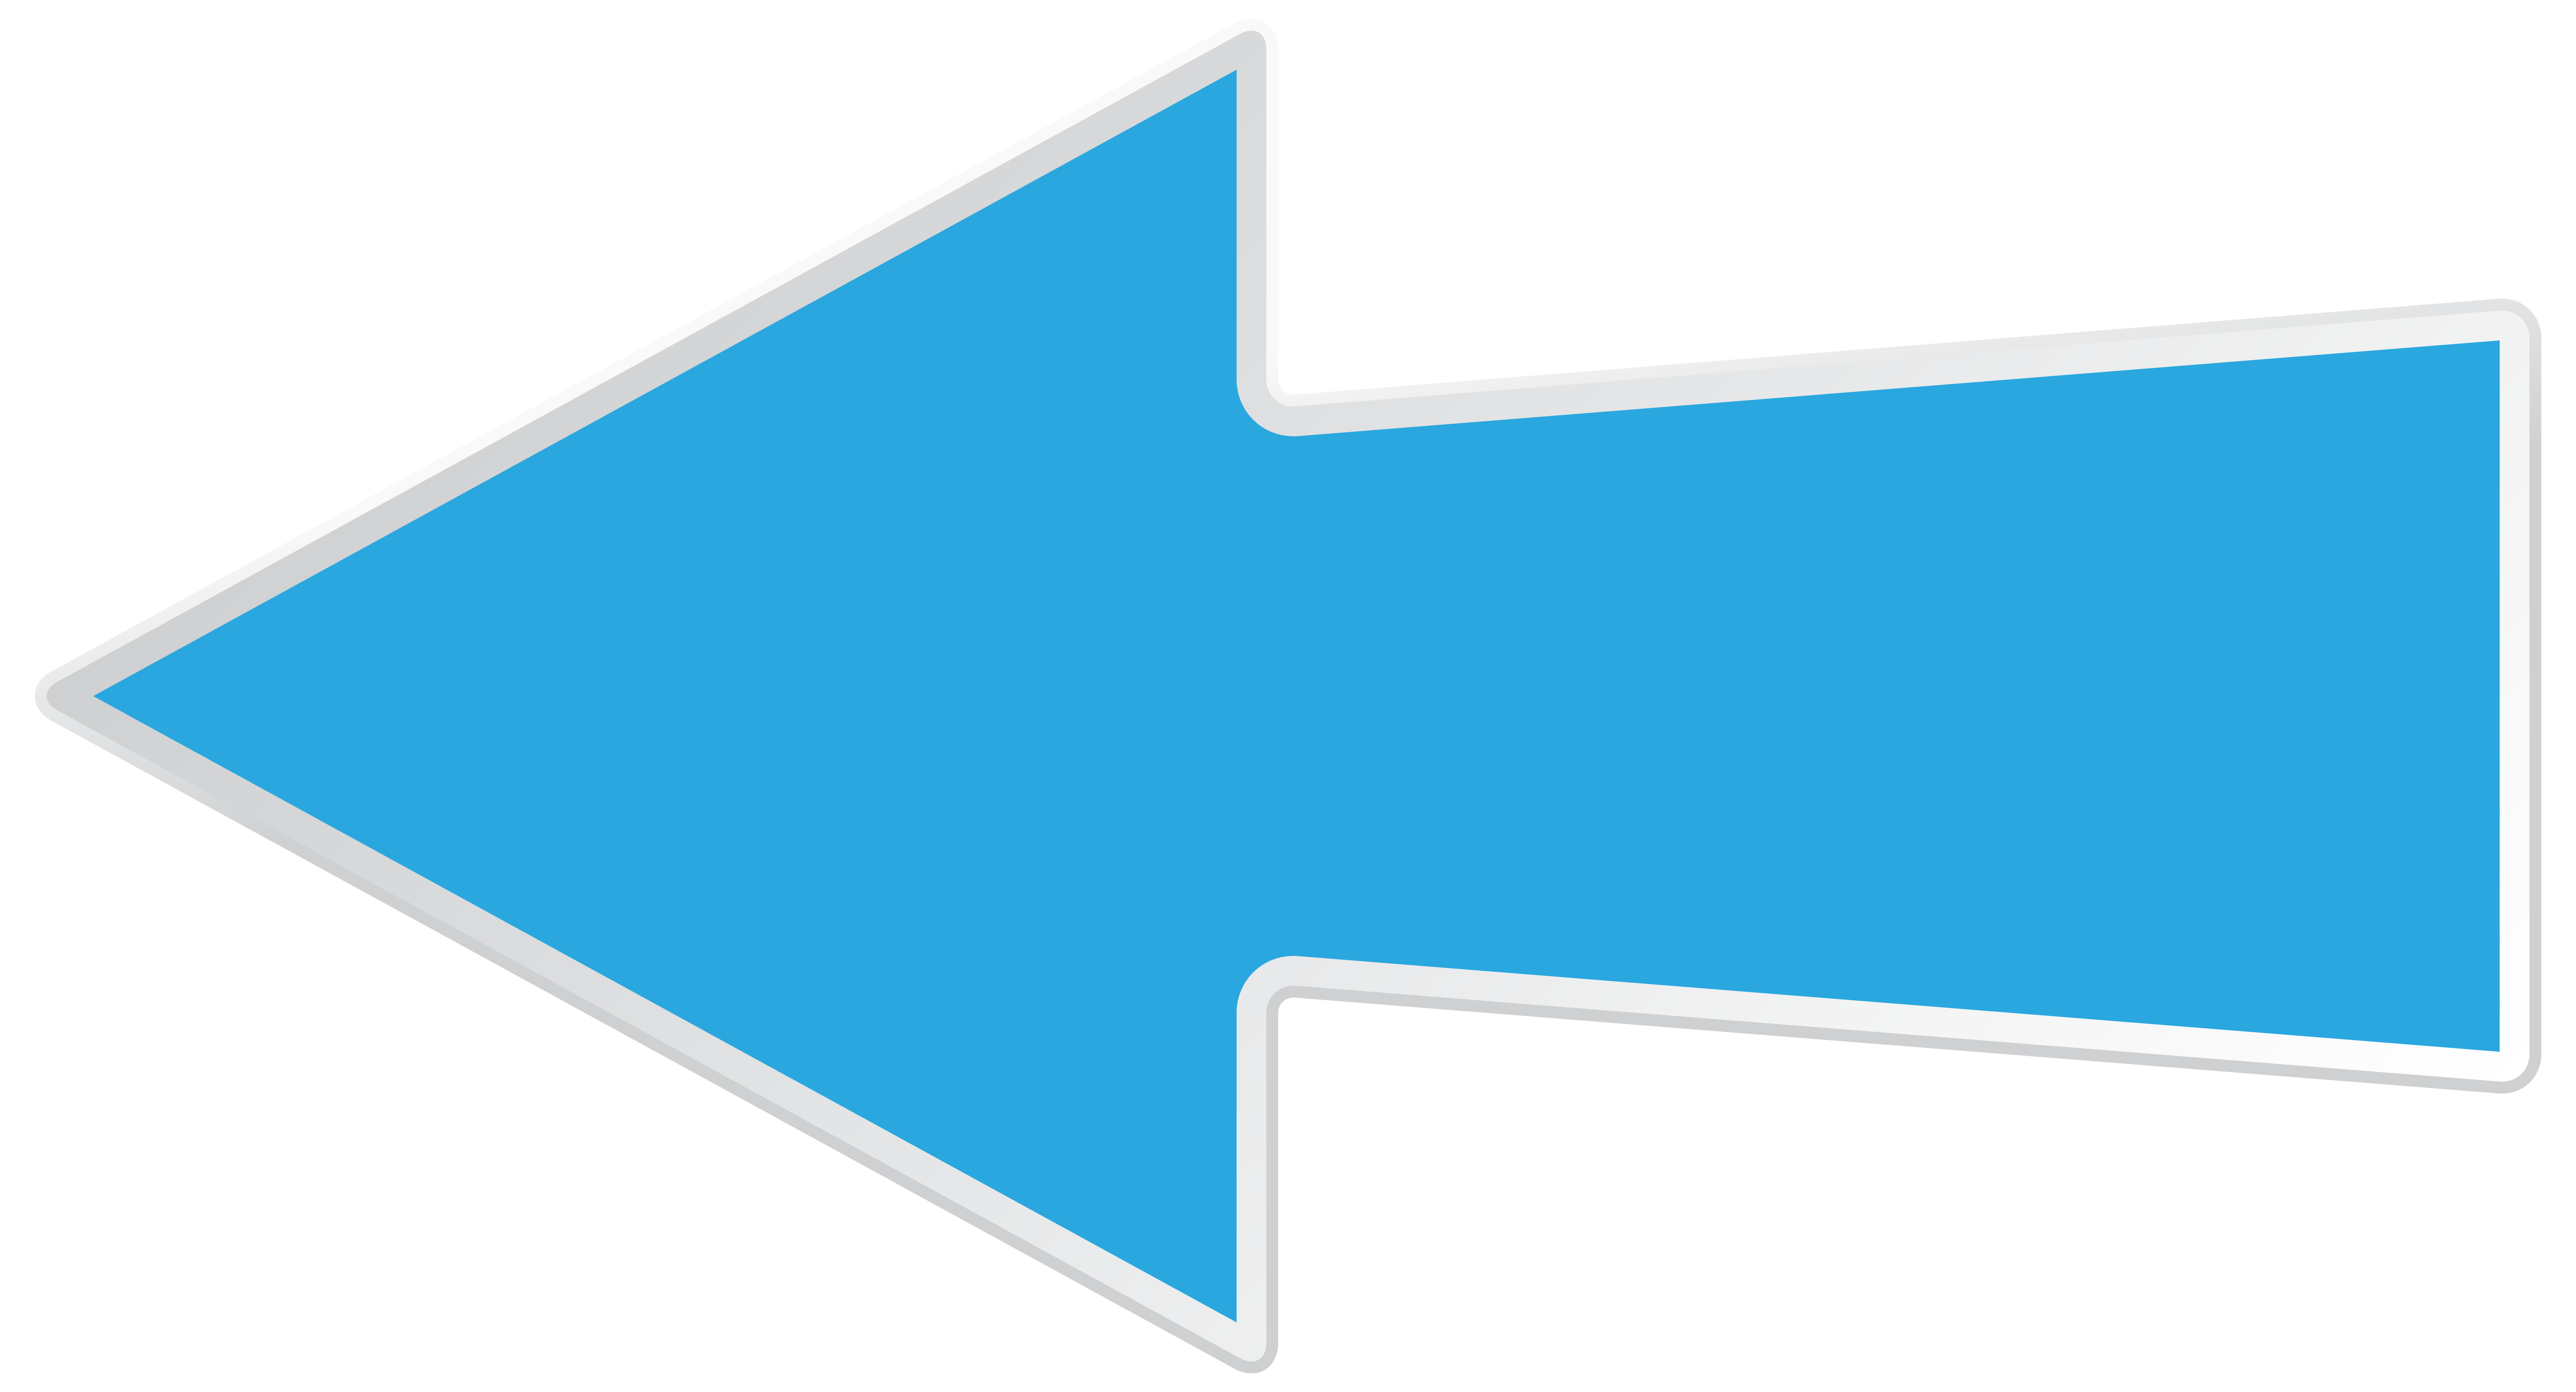 Blue Left Arrow Transparent PNG Clip Art Image